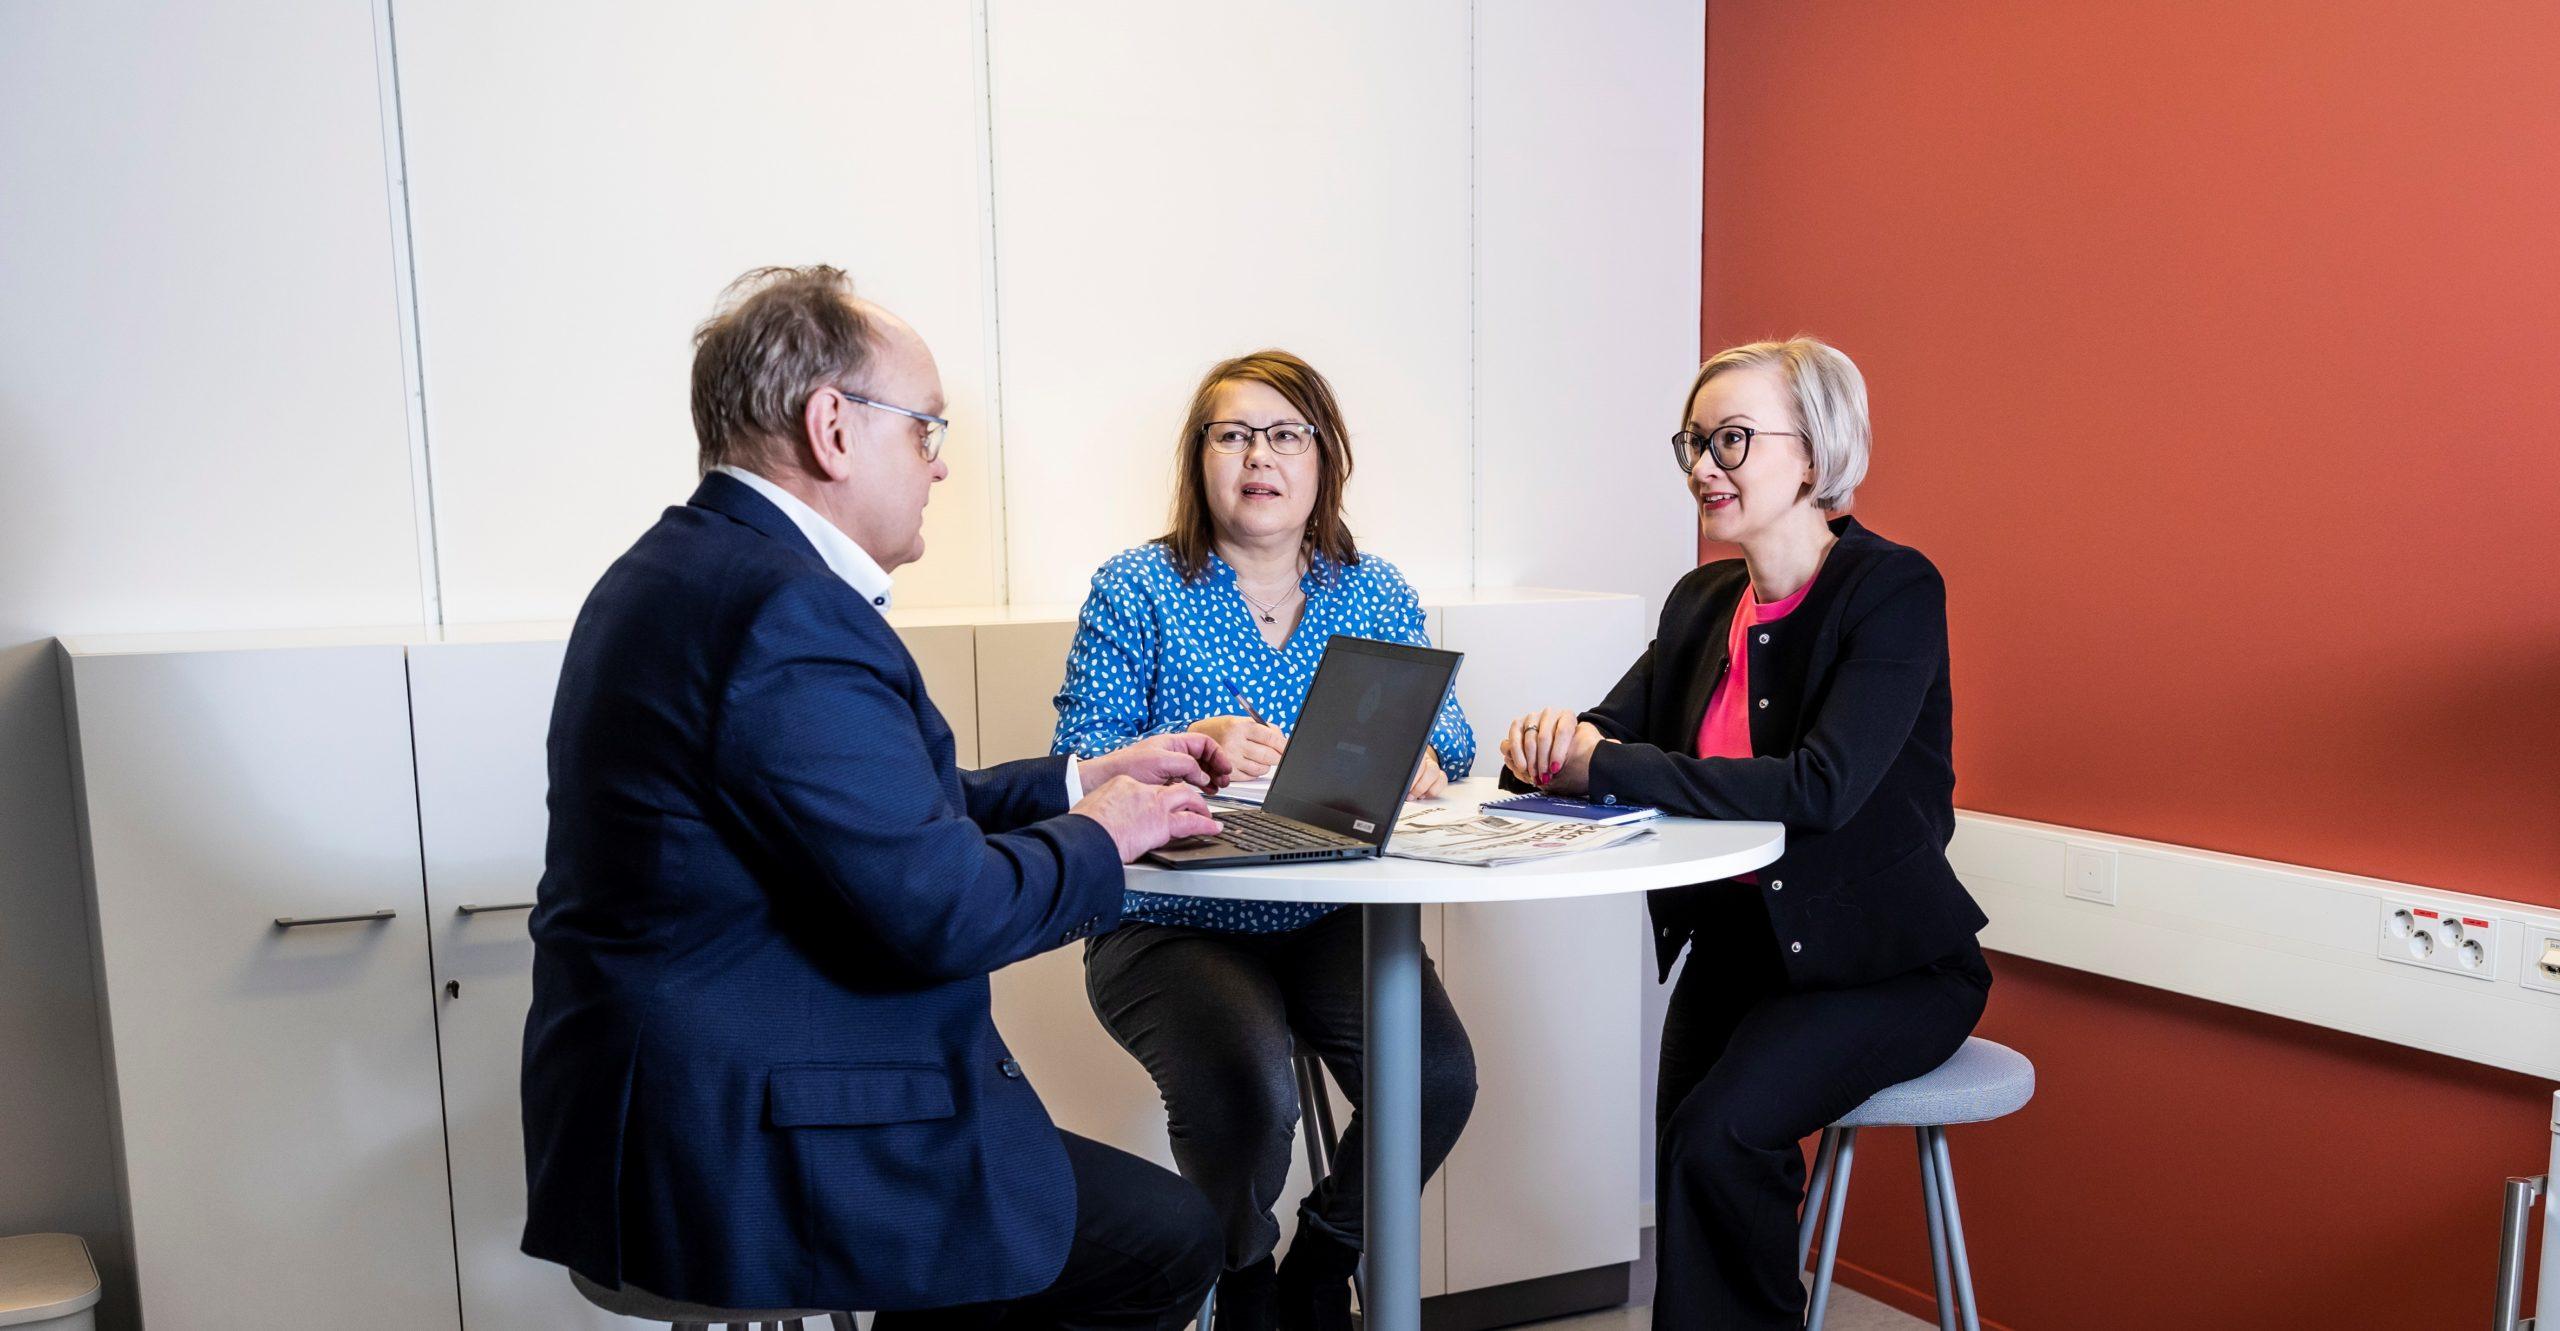 Kuvassa on kolme henkilöä istumassa pöydän ääressä Seinäjoen yliopistokeskuksen tiloissa.